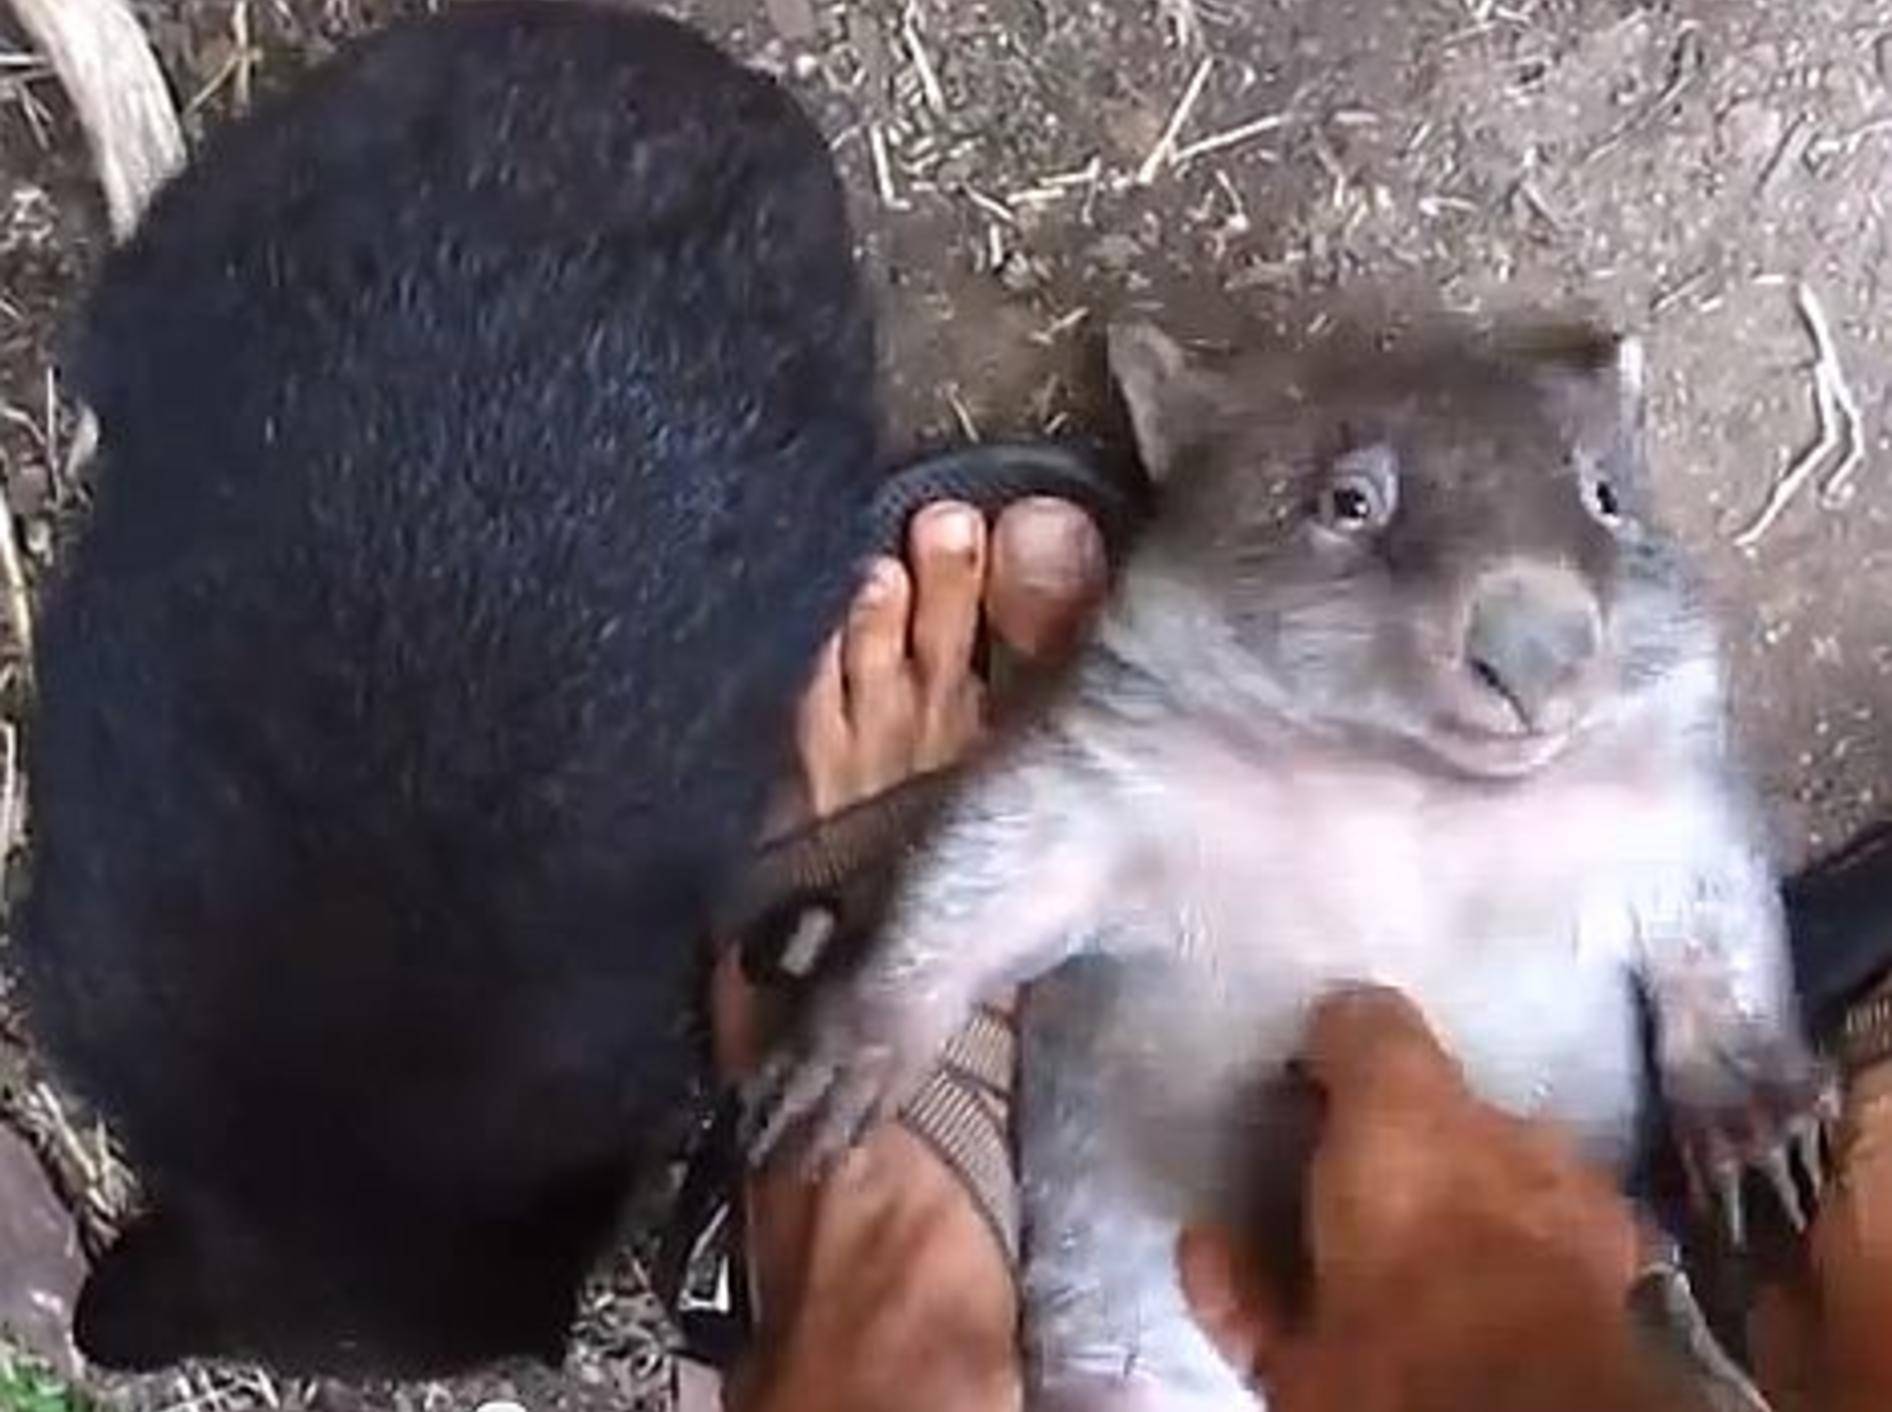 Spielzeit mit ein paar Baby-Wombats – Bild: Youtube / currenthought